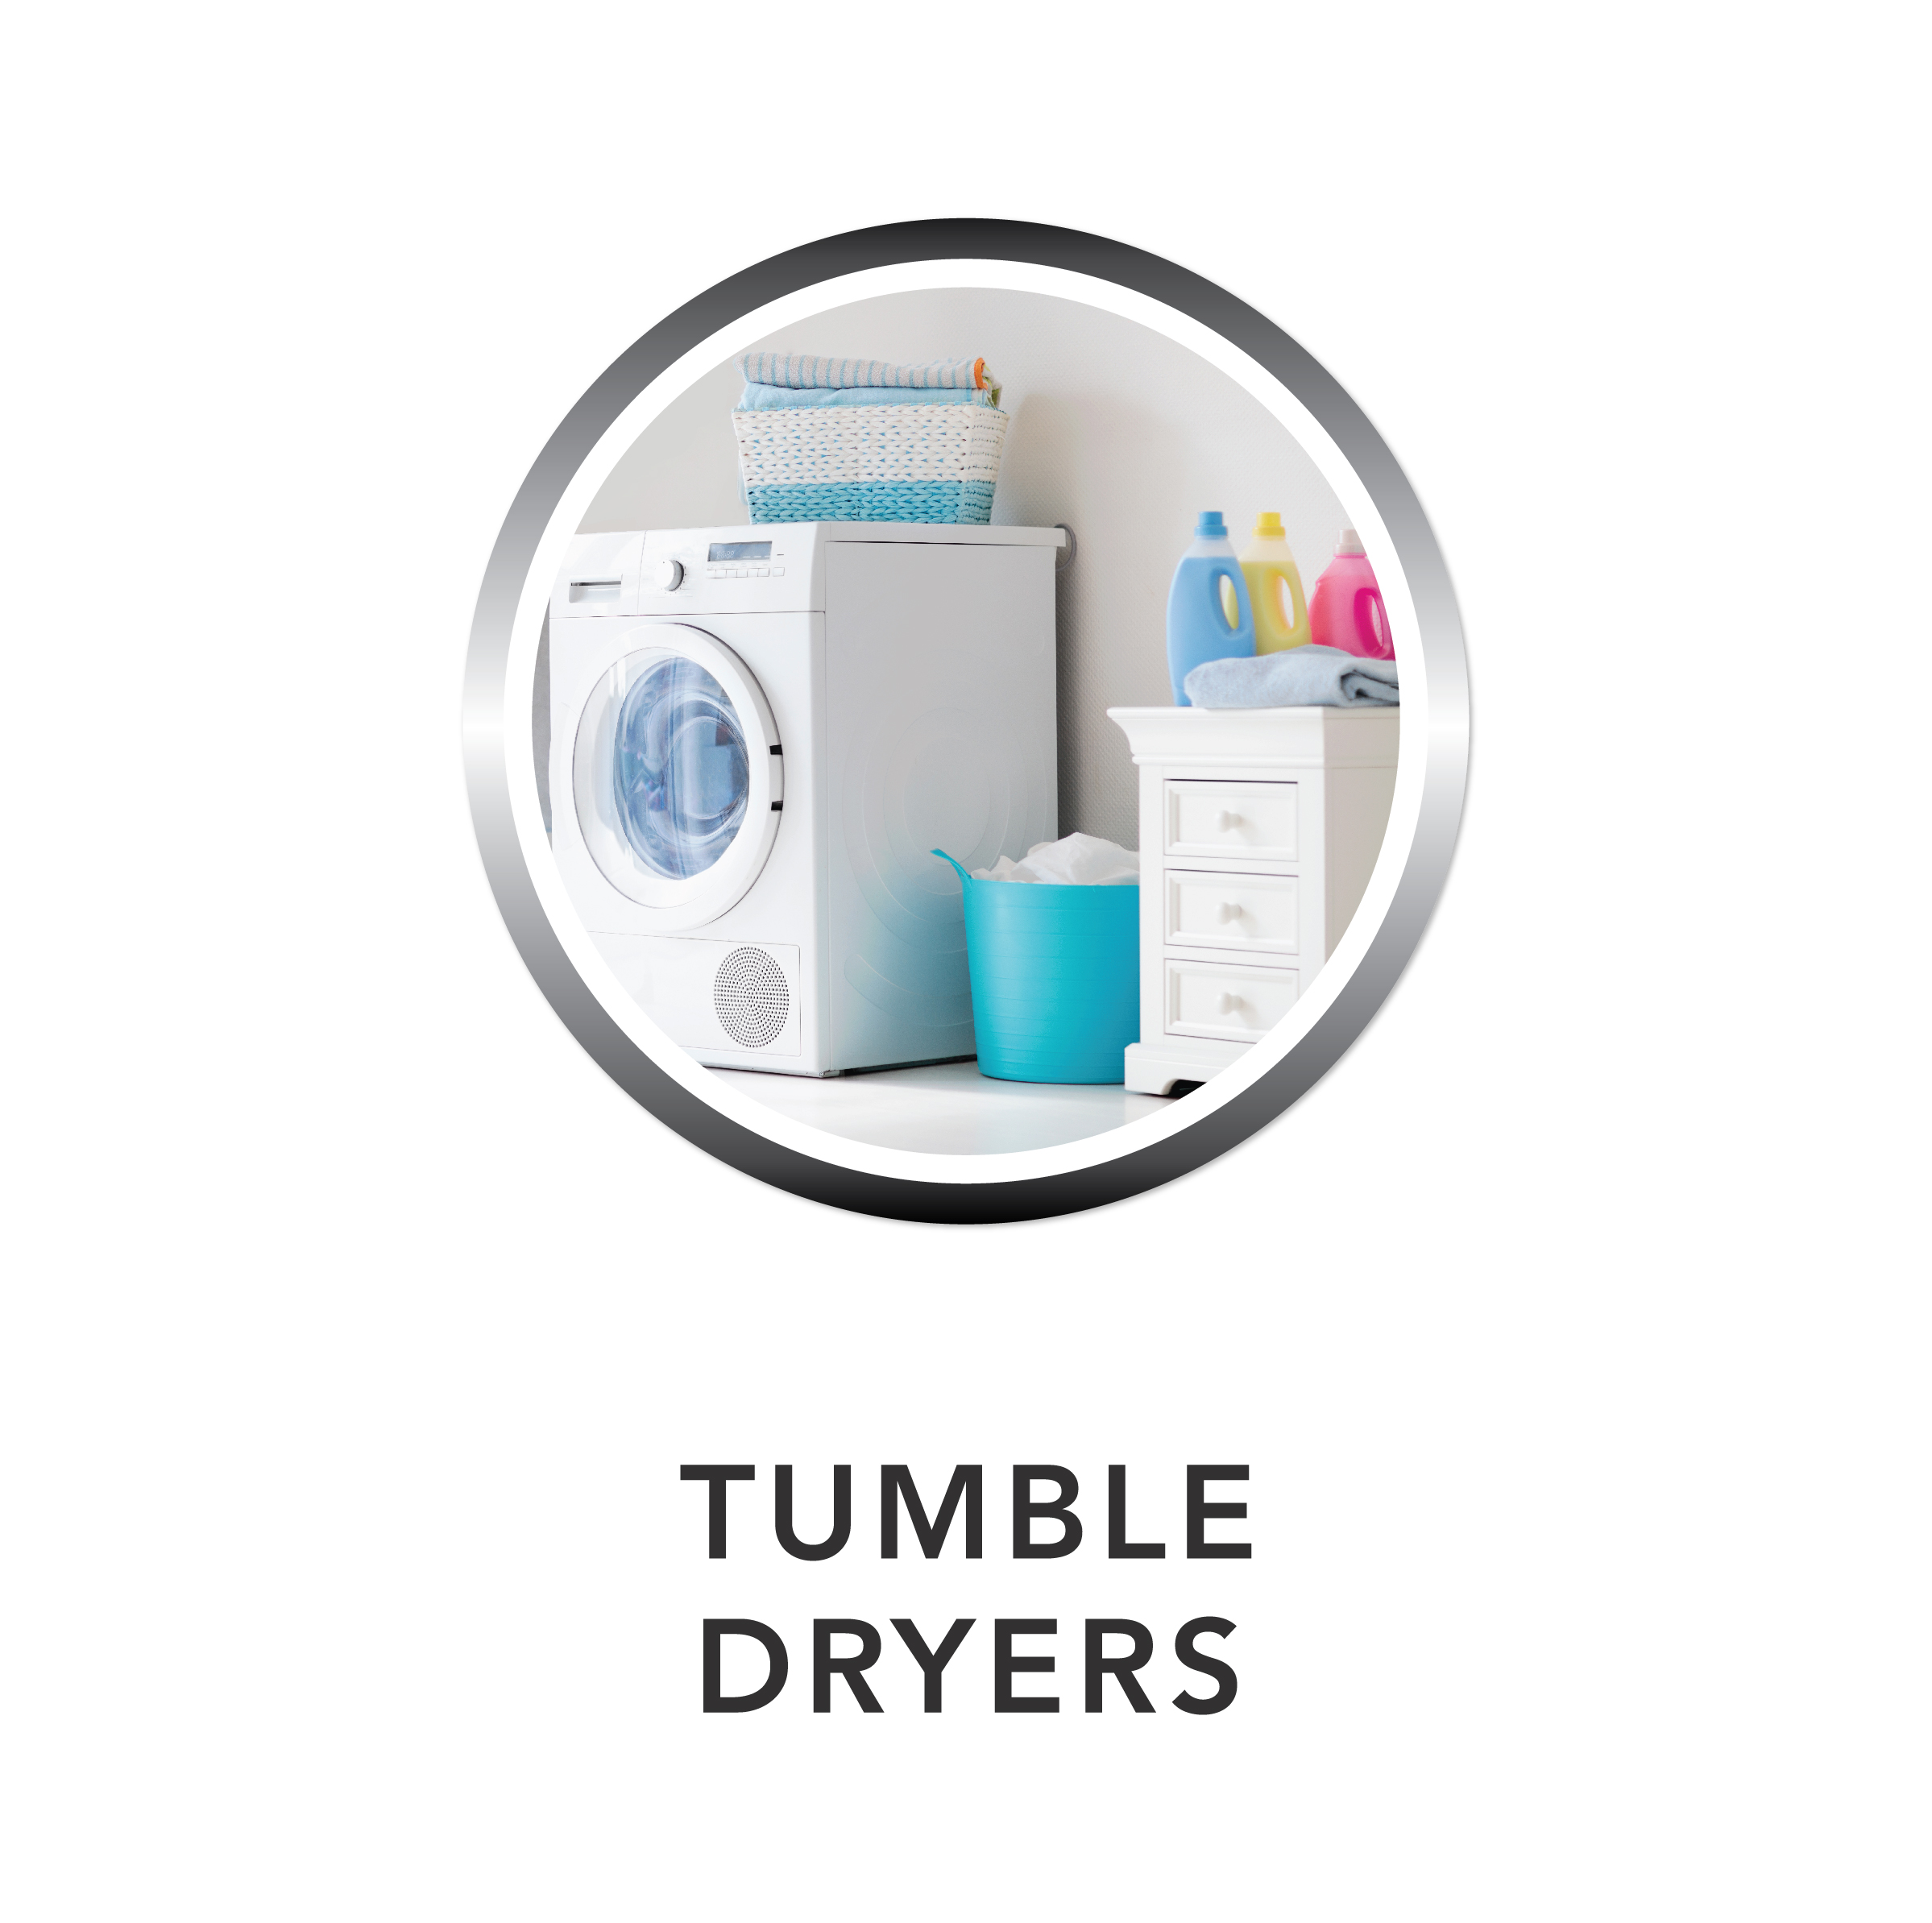 Tumble Dryers